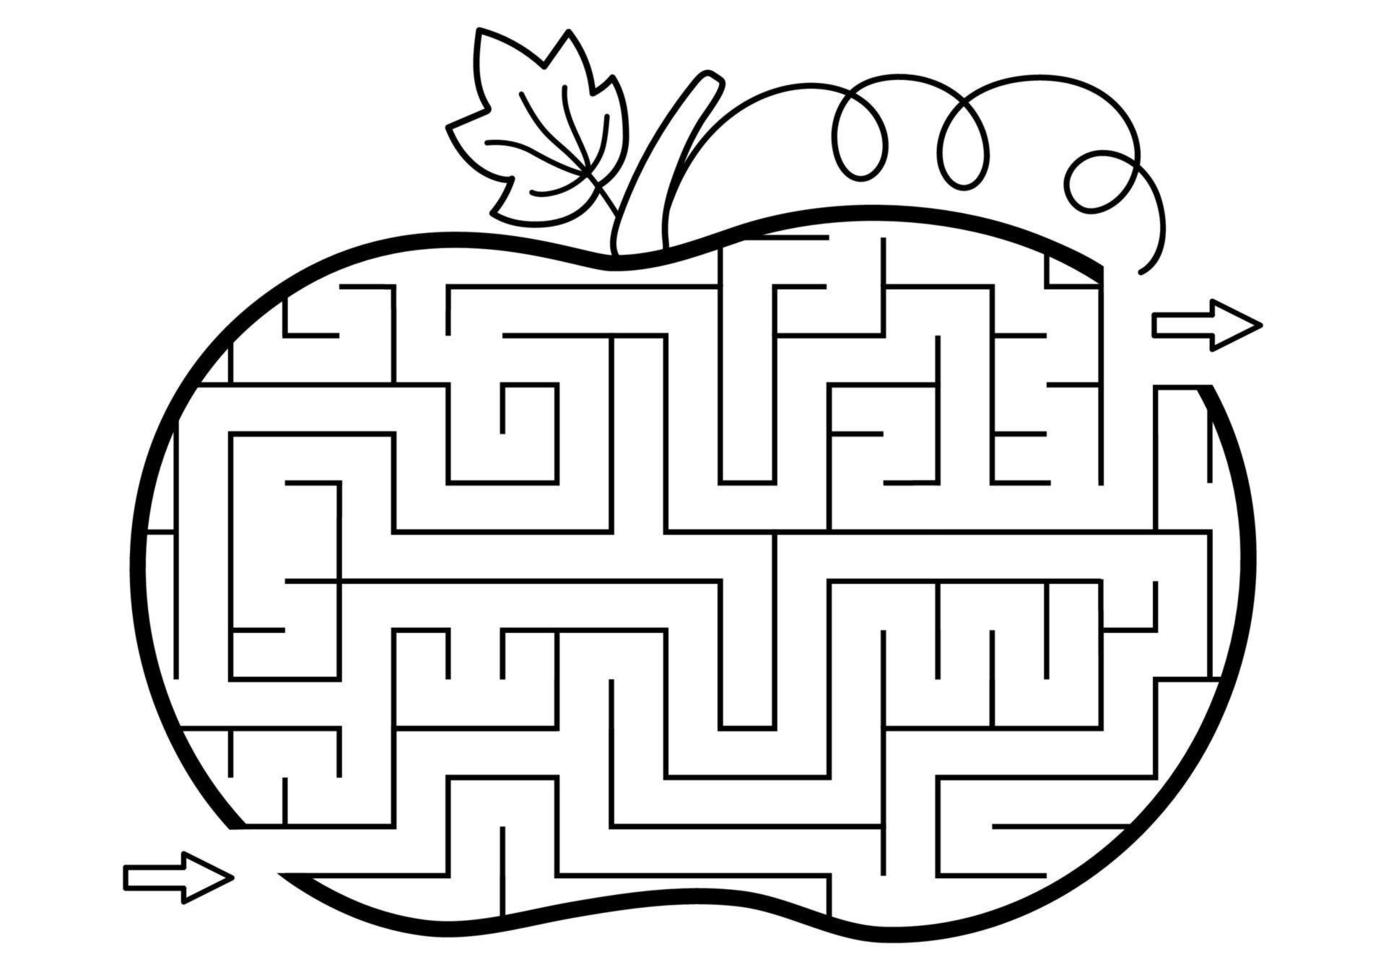 Thanksgiving Schwarz-Weiß-Labyrinth für Kinder. Herbst- oder Halloween-Feiertagslinie druckbare Aktivität. fallen Sie geometrische Umriss-Labyrinth-Spiel oder Puzzle wie Kürbis geformt. Ernte-Themenseite für Kinder vektor